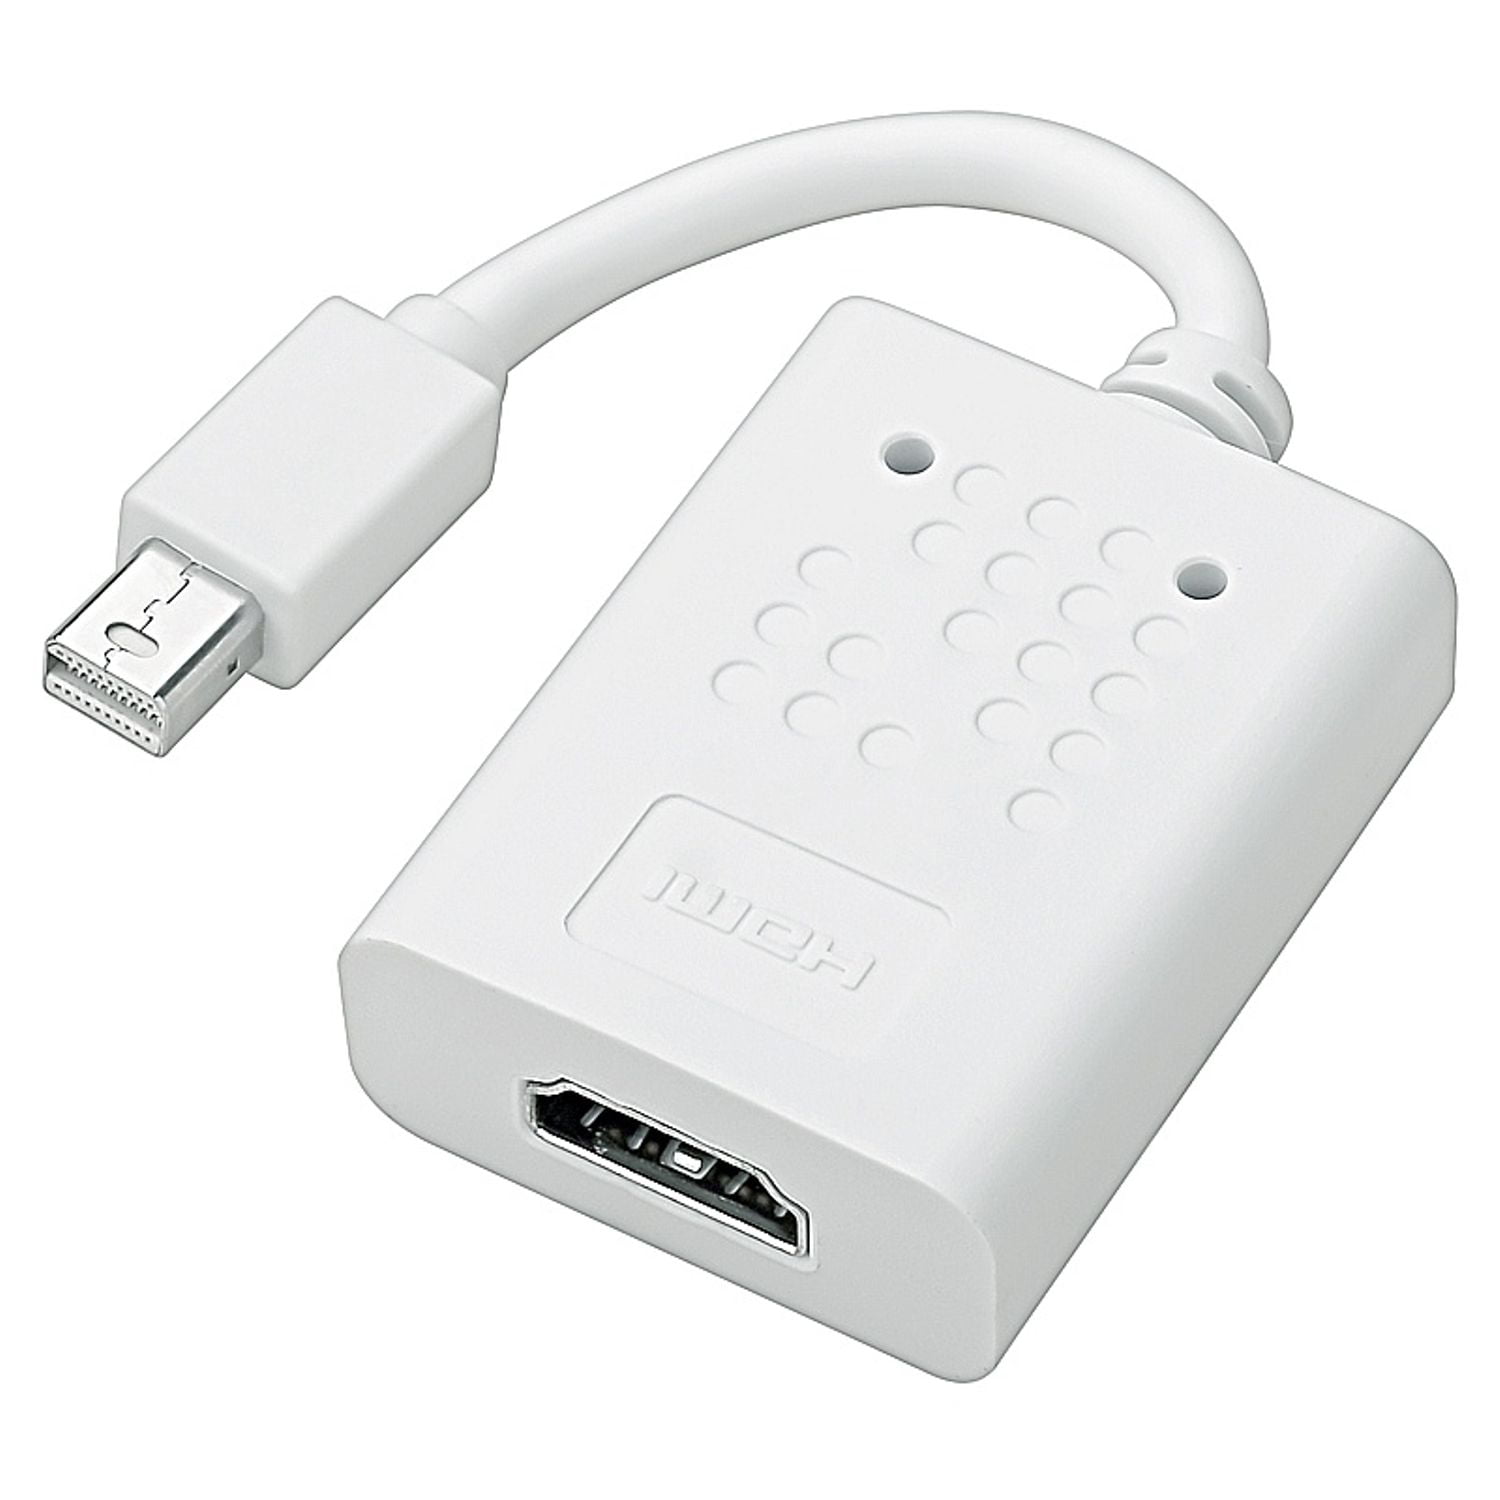 macbook air hdmi connector